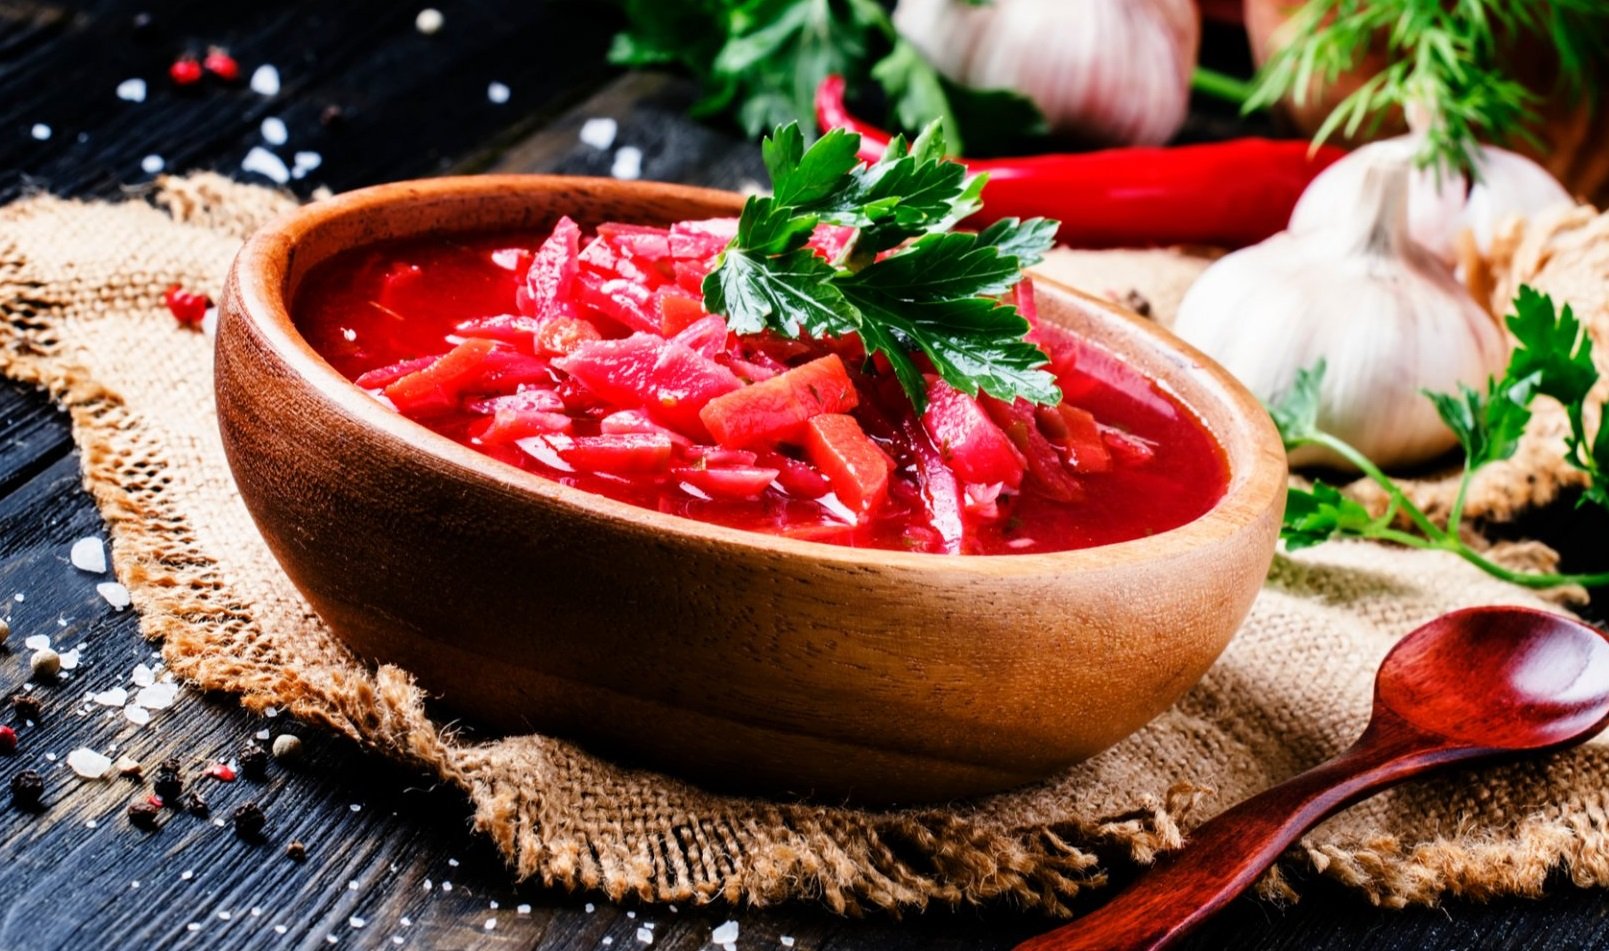 Червоний борщ з грибами та м'ясом - секрети приготування смачного і ситного обіду